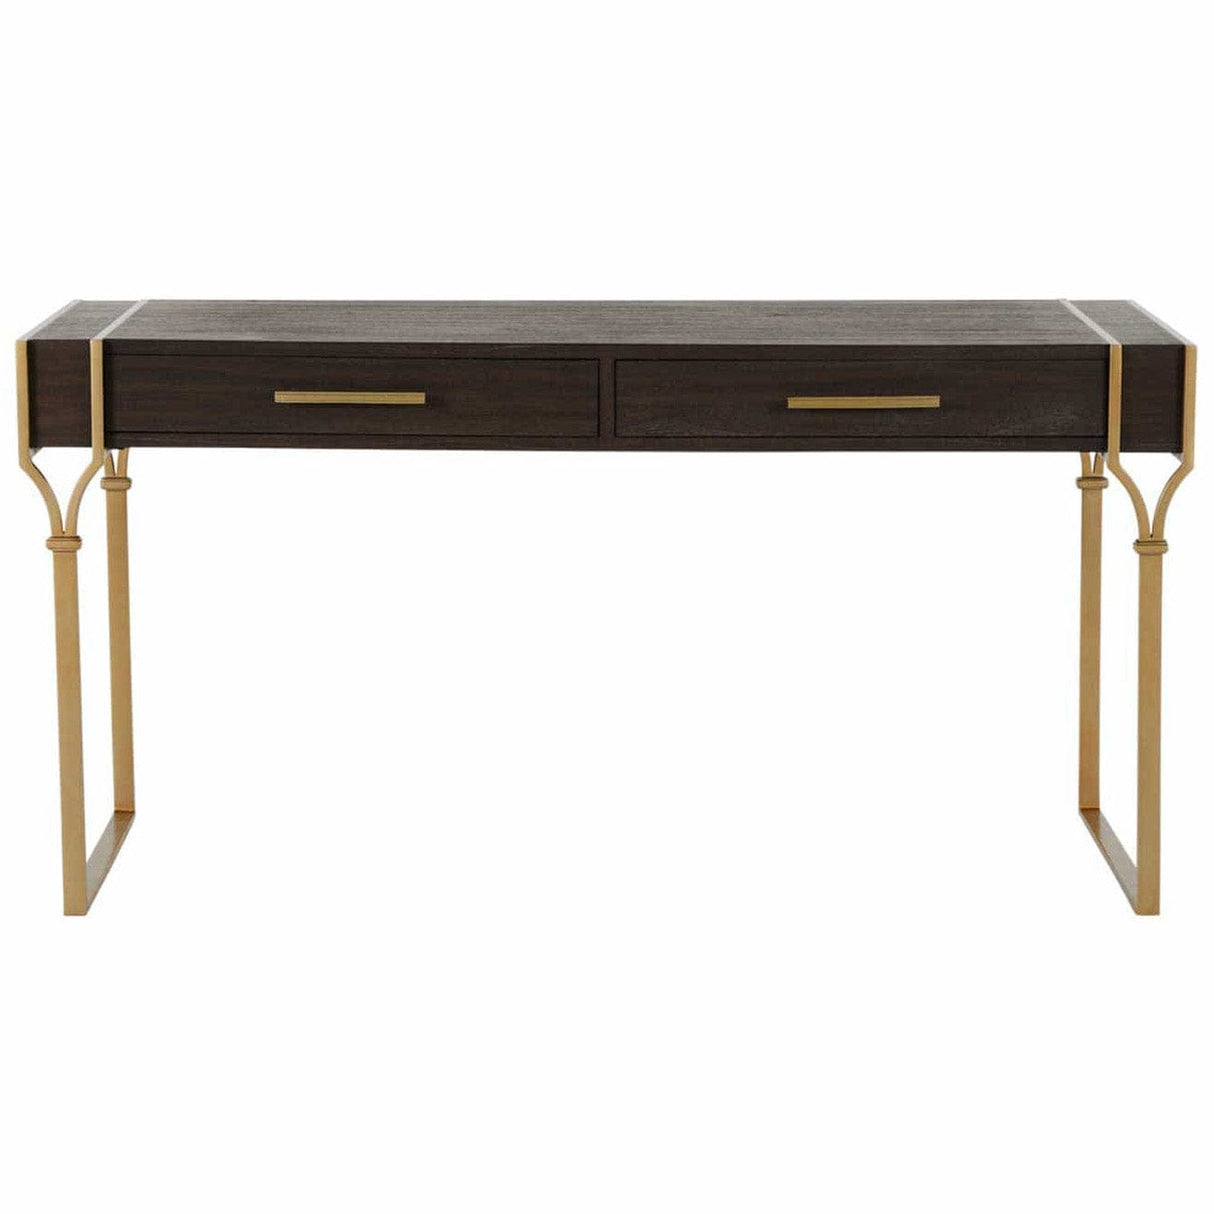 Gabby Salvador Desk Furniture gabby-SCH-166250